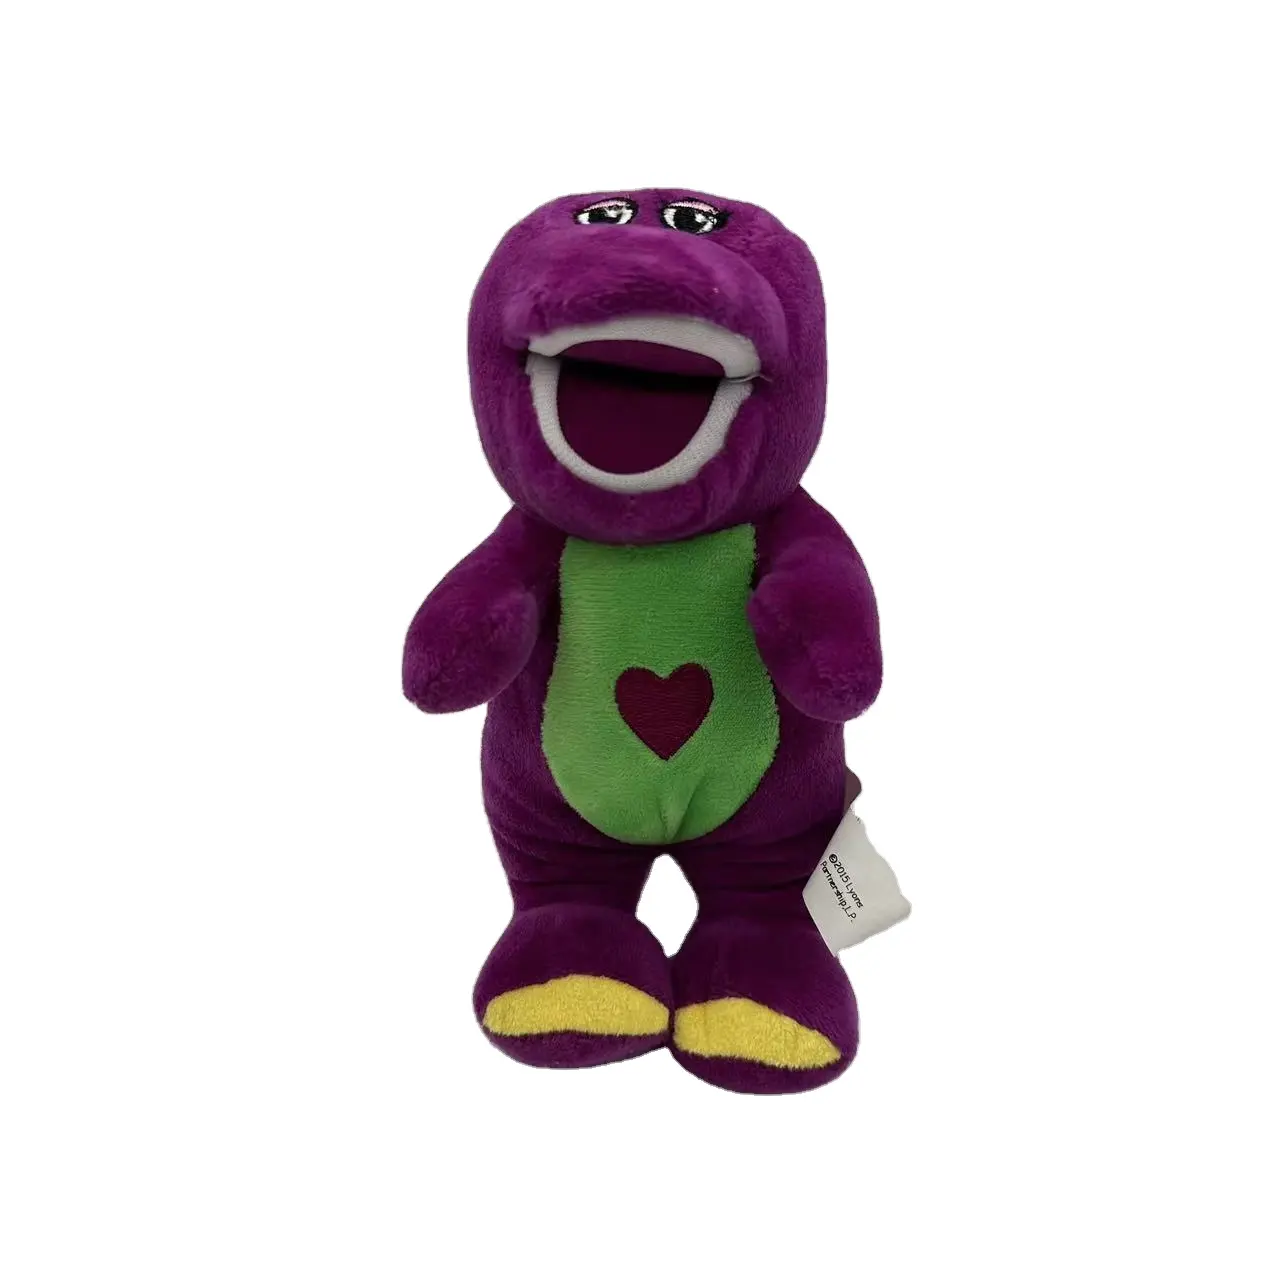 Venta caliente Fabricante OEM dinosaurio Barney peluche lindo muñeco regalo de Navidad para niños